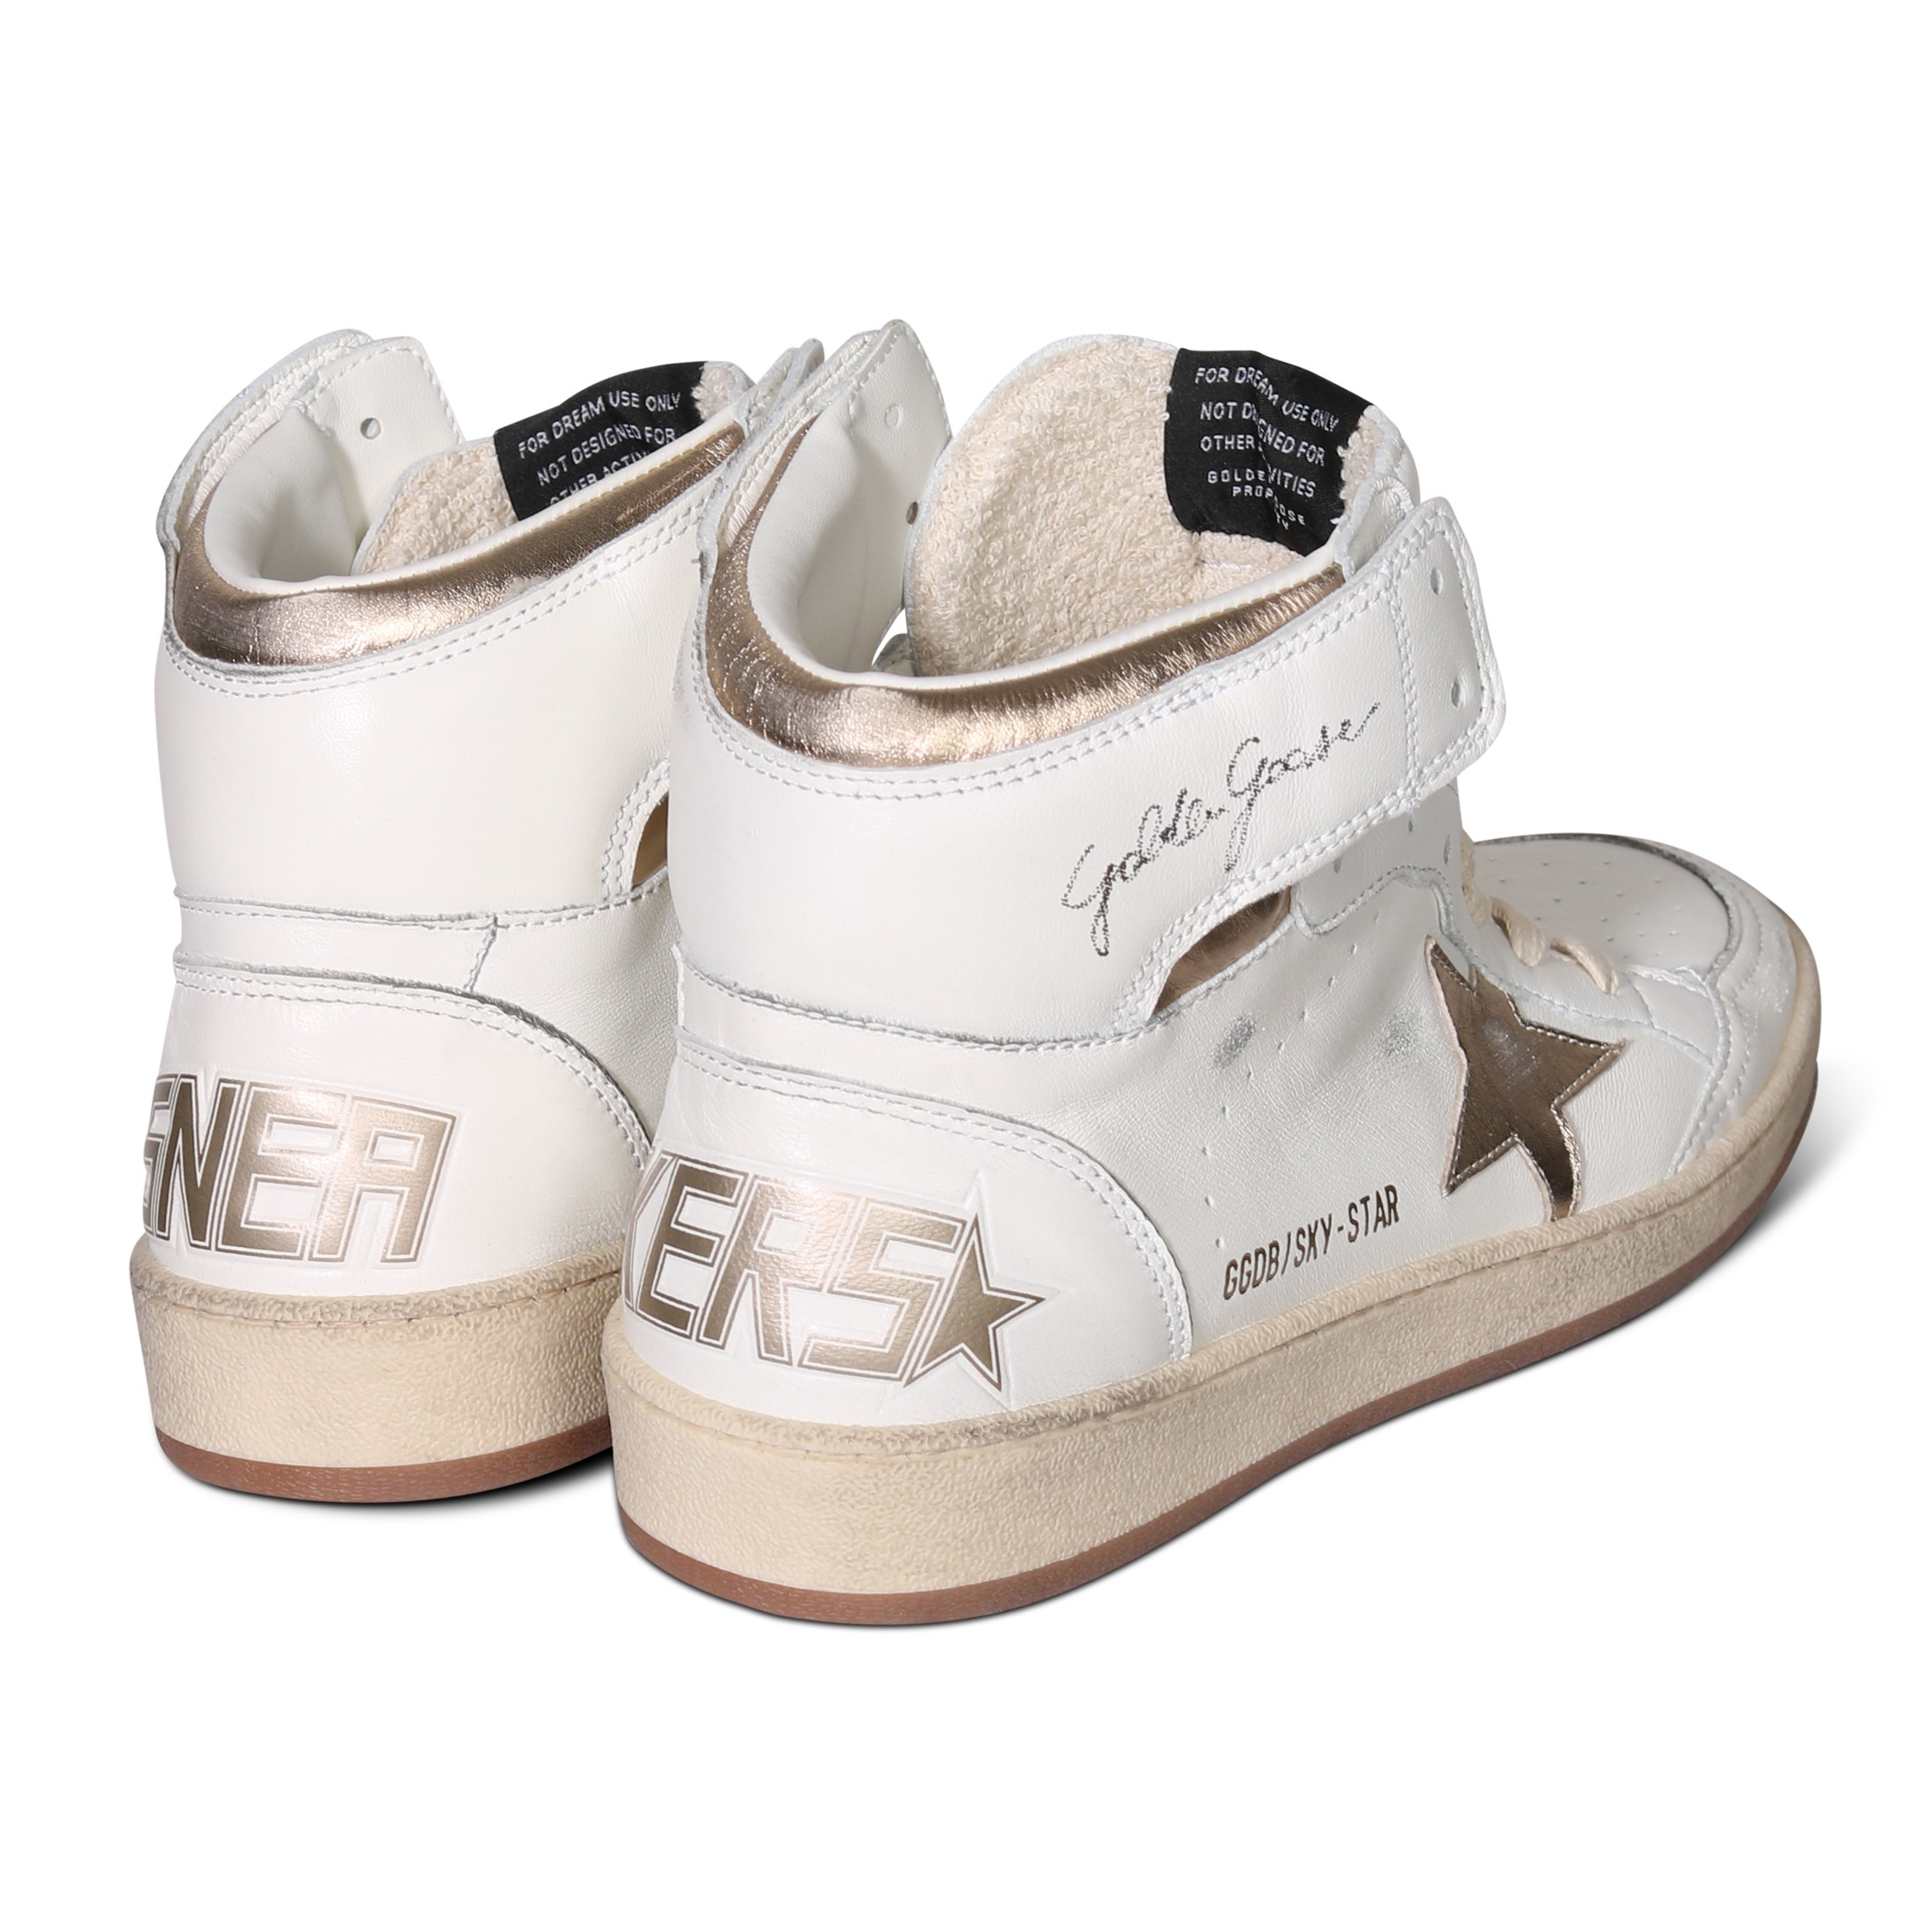 GOLDEN GOOSE Sneaker Sky Star in White/Gold Nappa 39